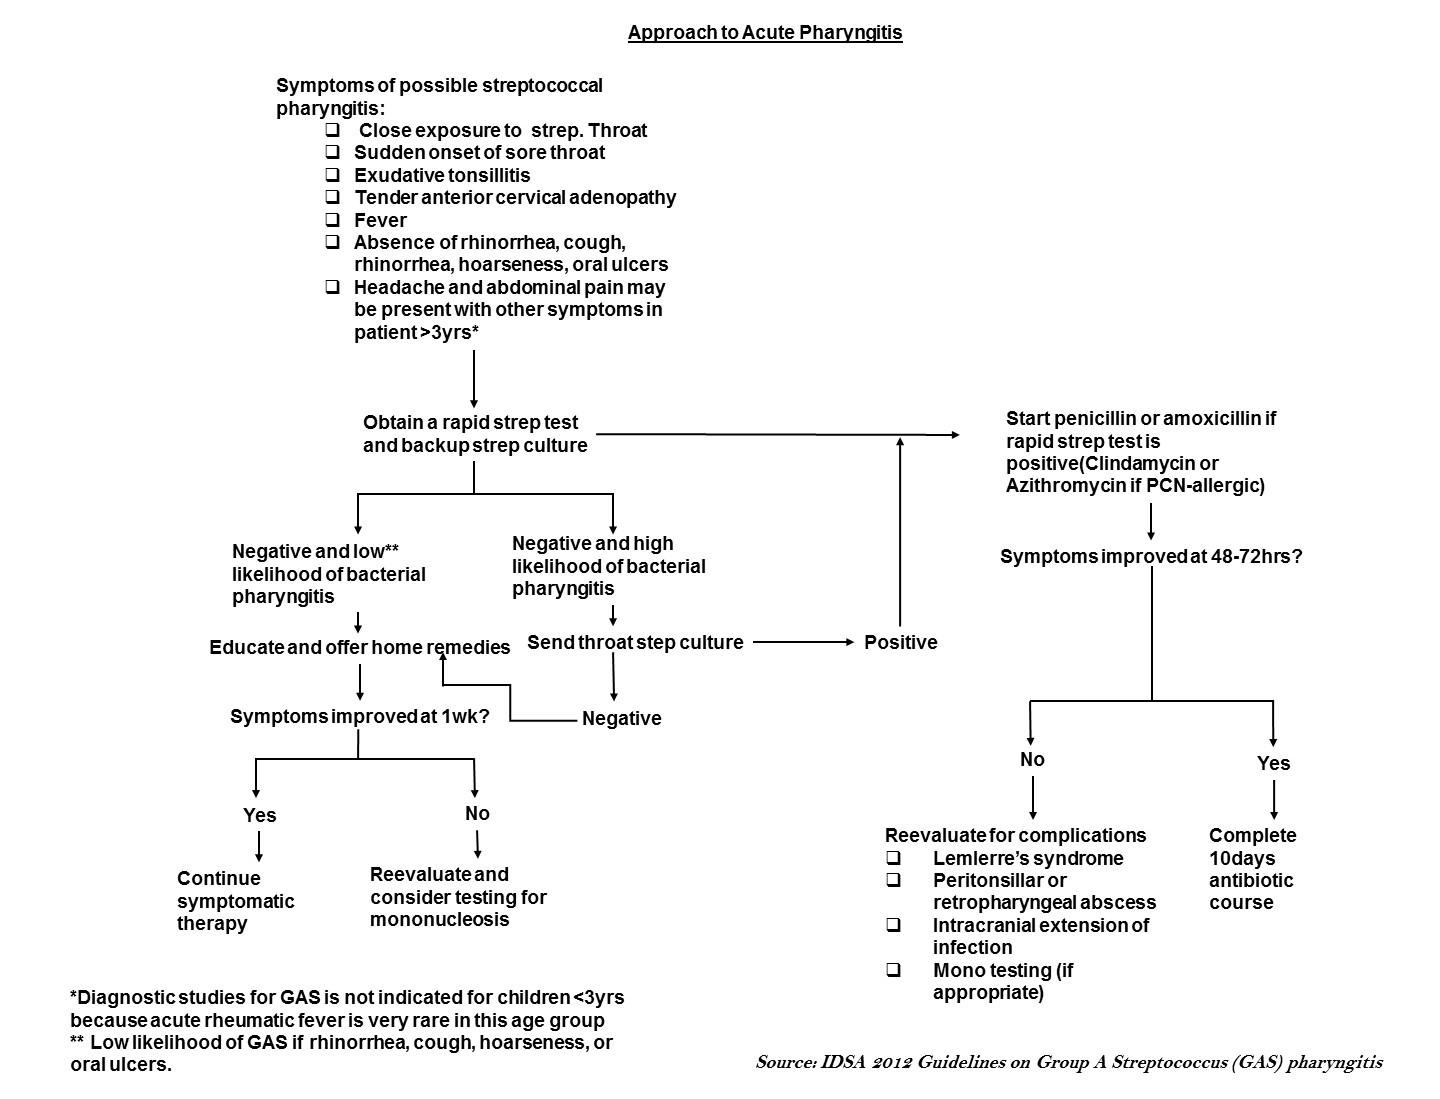 Evaluation of acute pharyngitis.jpg